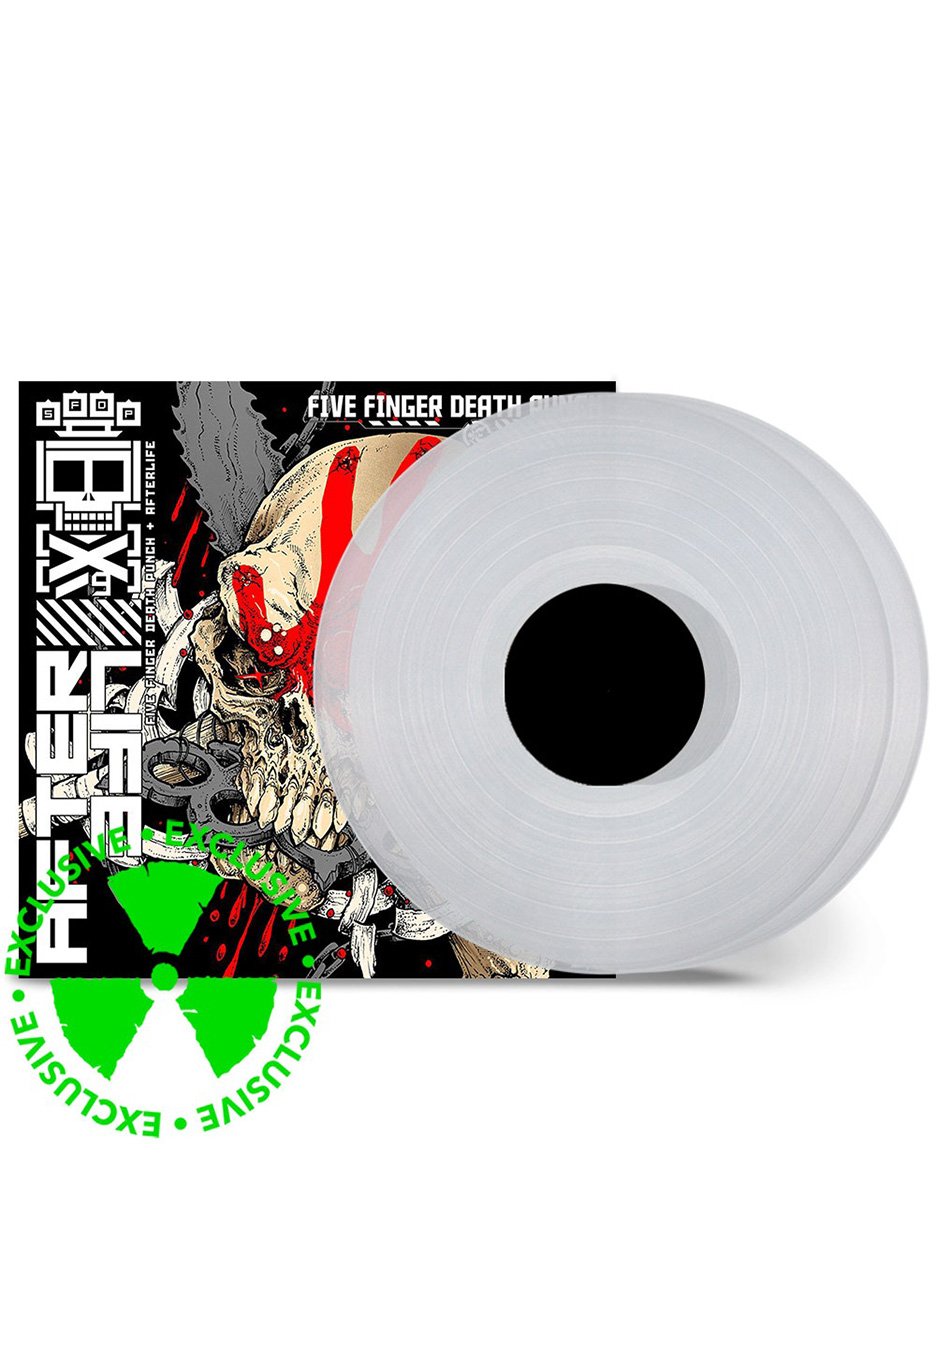 Five Finger Death Punch - Afterlife Transparent - Colored 2 Vinyl